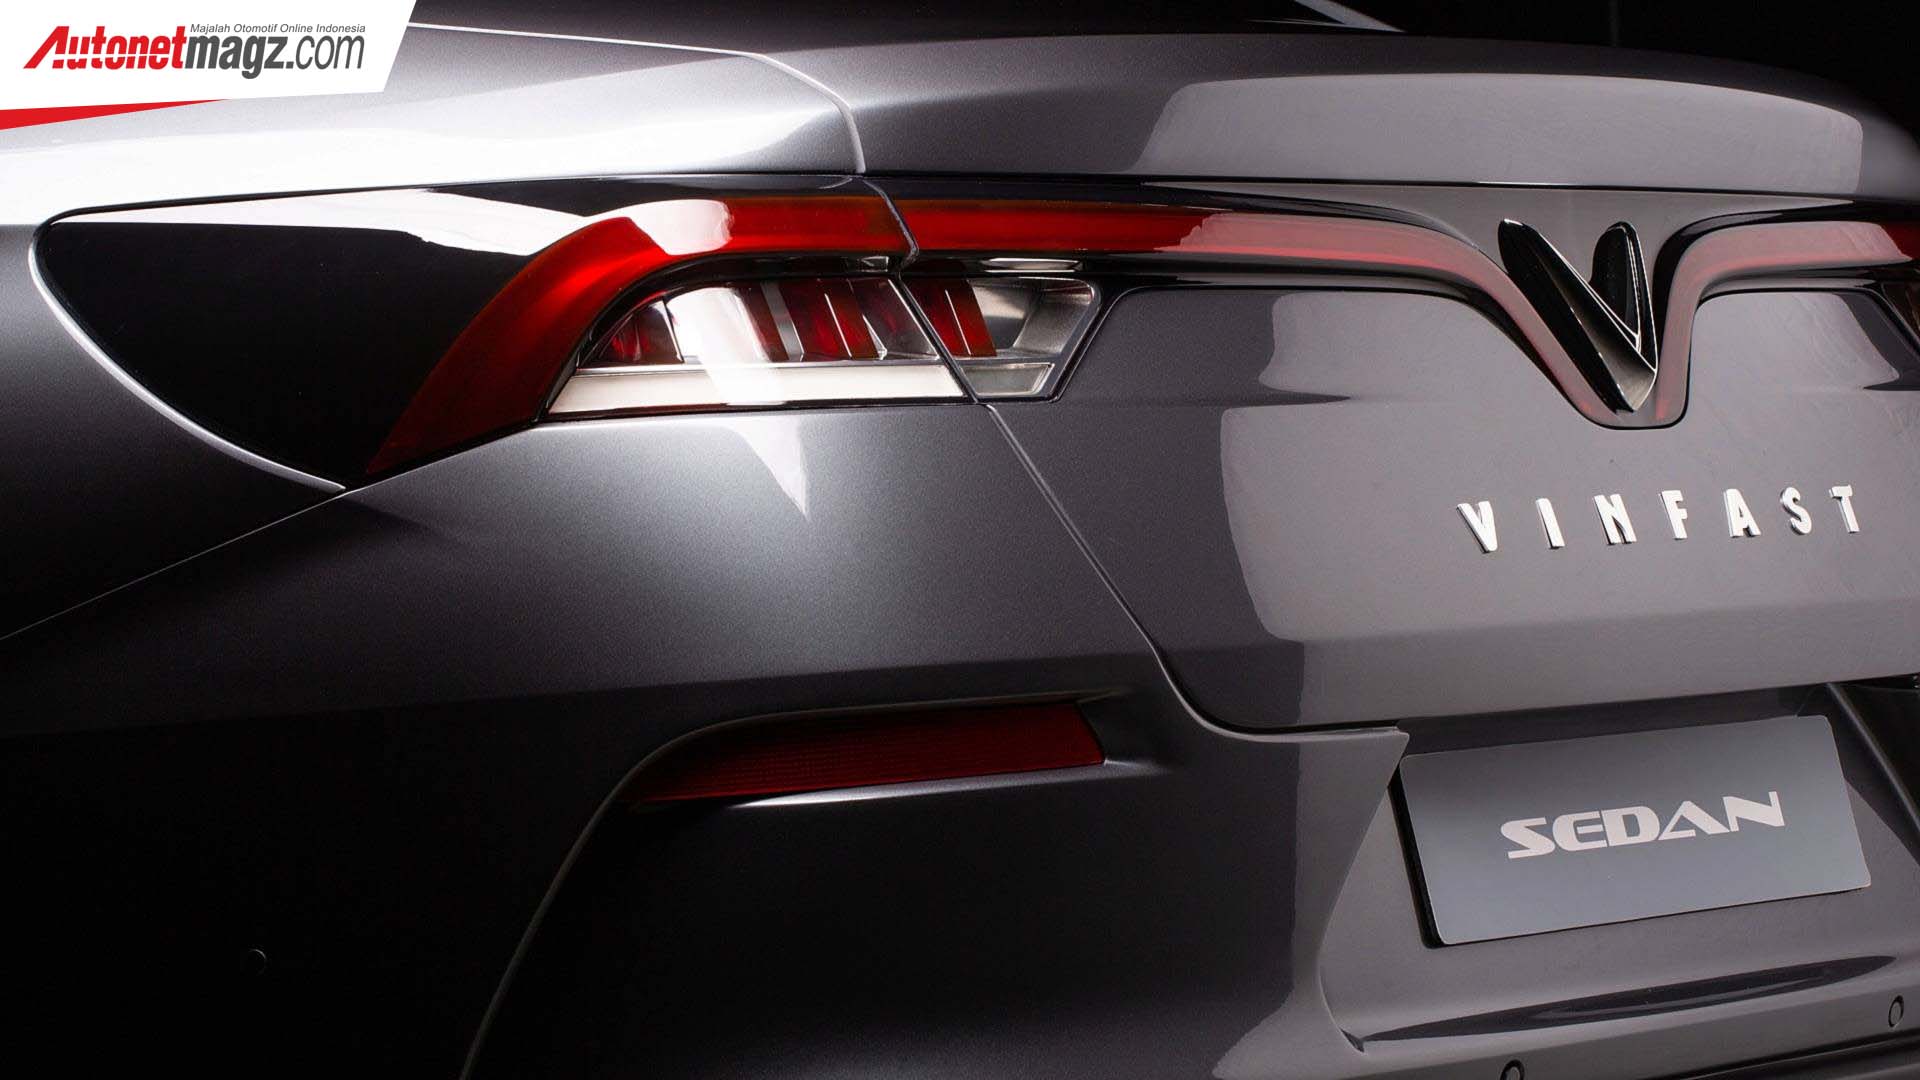 Berita, Lampu belakang Vinfast Sedan: VinFast Rilis Dua Mobil Baru di Paris Auto Show, Seperti Apa?